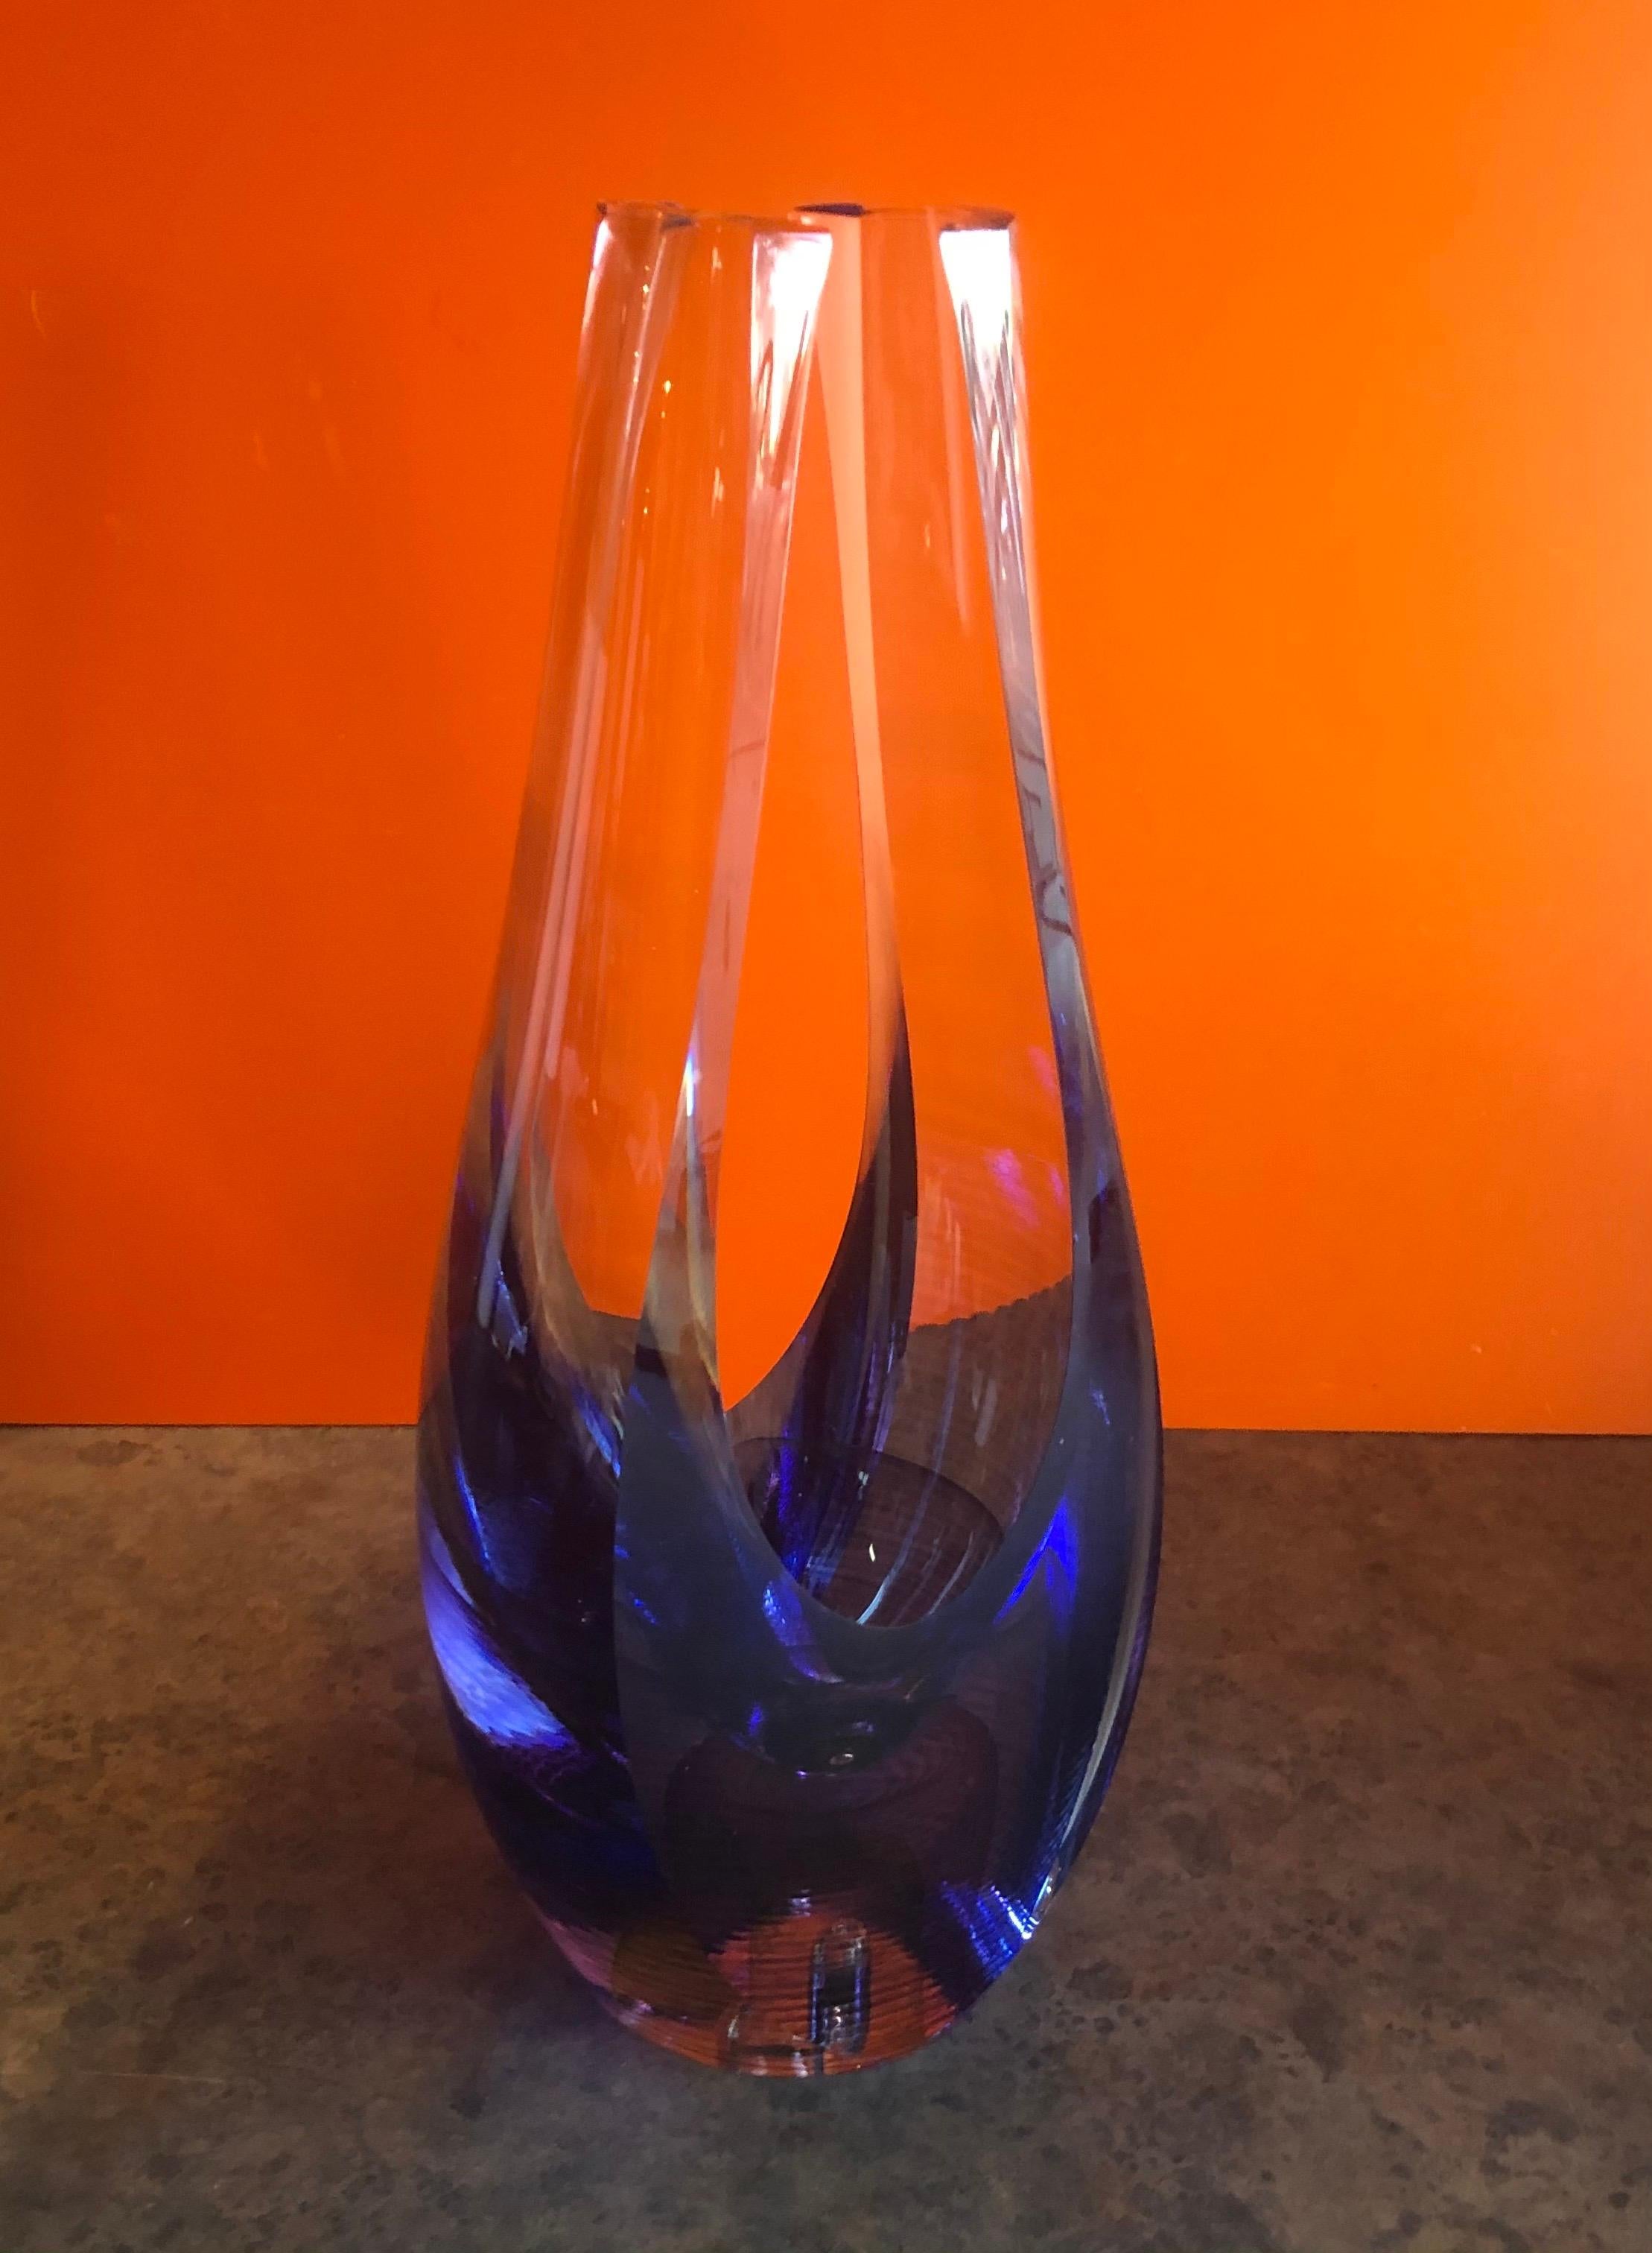 Vase / sculpture en verre d'art contemporain par Kit Karbler et Michael David du Blake Street Glass Studio, vers les années 1990. Ce design original est obtenu grâce à leur technique de superposition, d'enfilage, de coupe et de polissage du verre